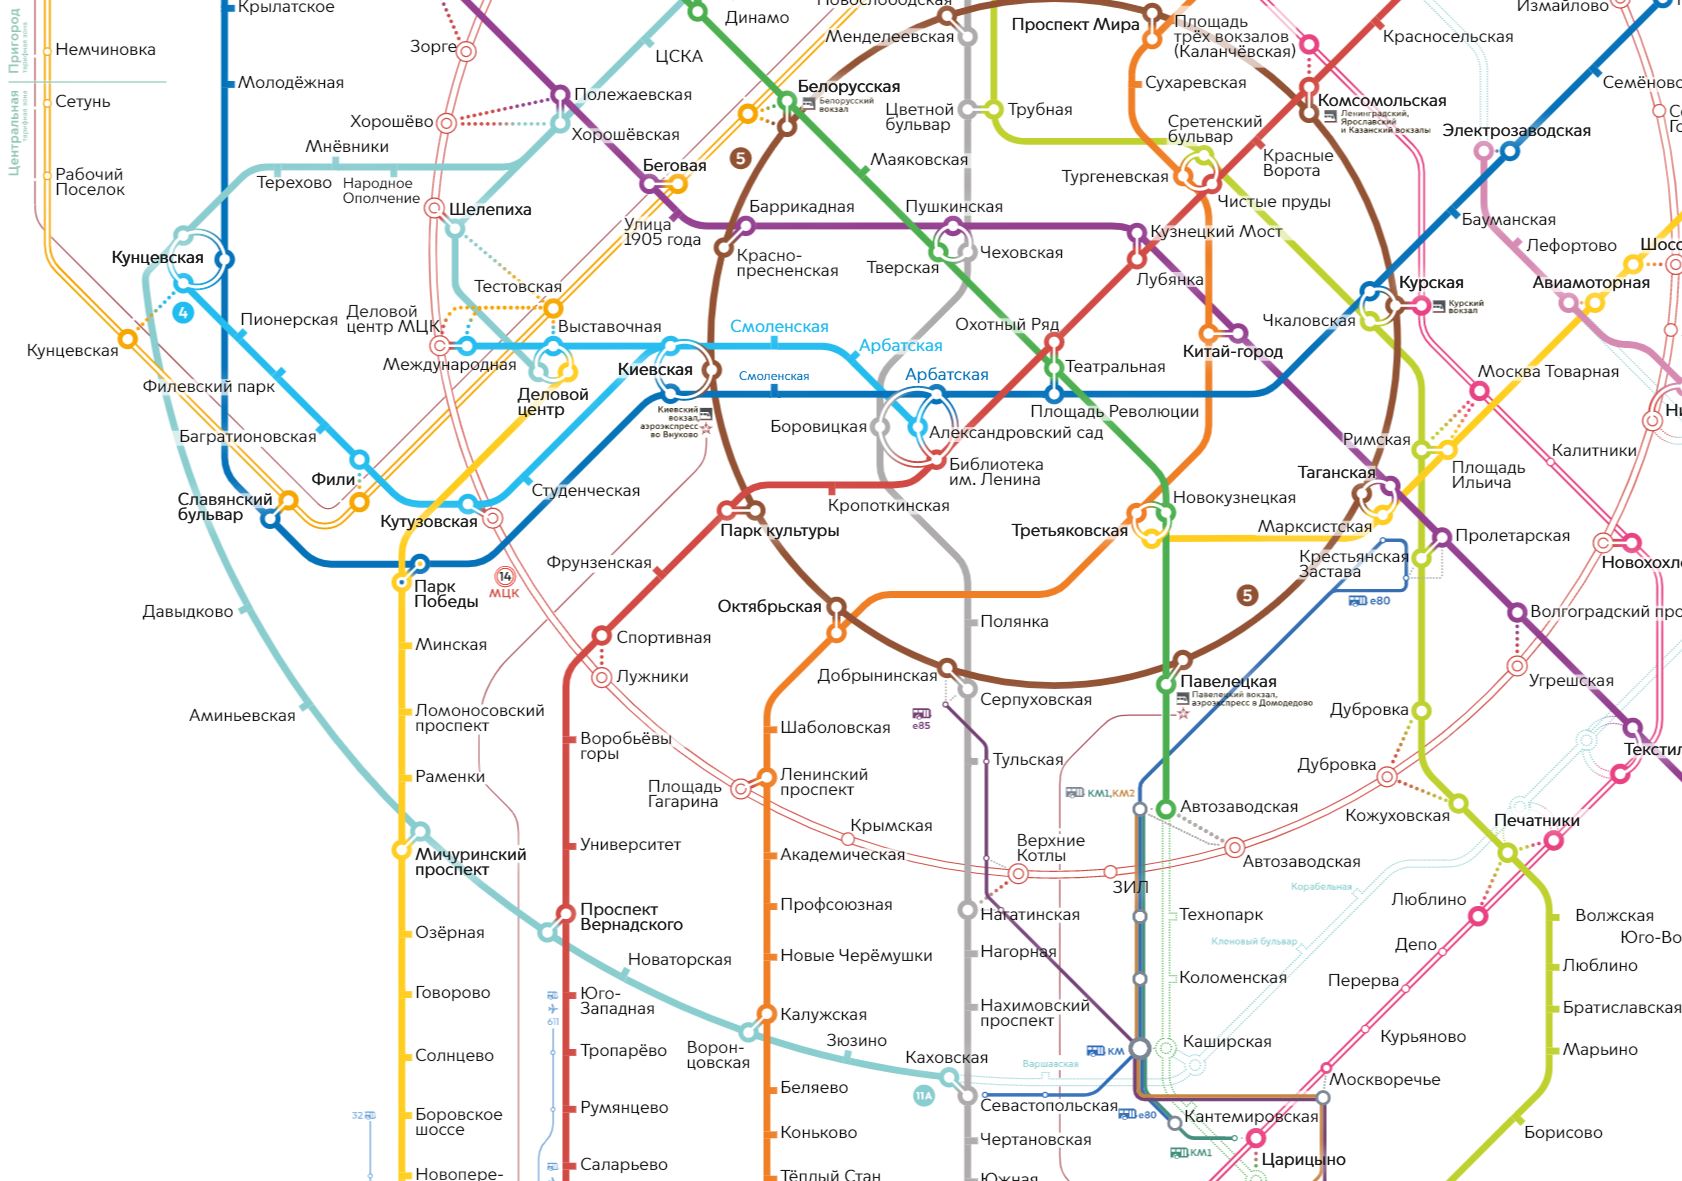 Схема метро москвы с бкл и мцд. Схема метро 2030 год Москва. Московское метро это Москва 2020. Схема метро с БКЛ И МЦД. План схемы метро на 2030.